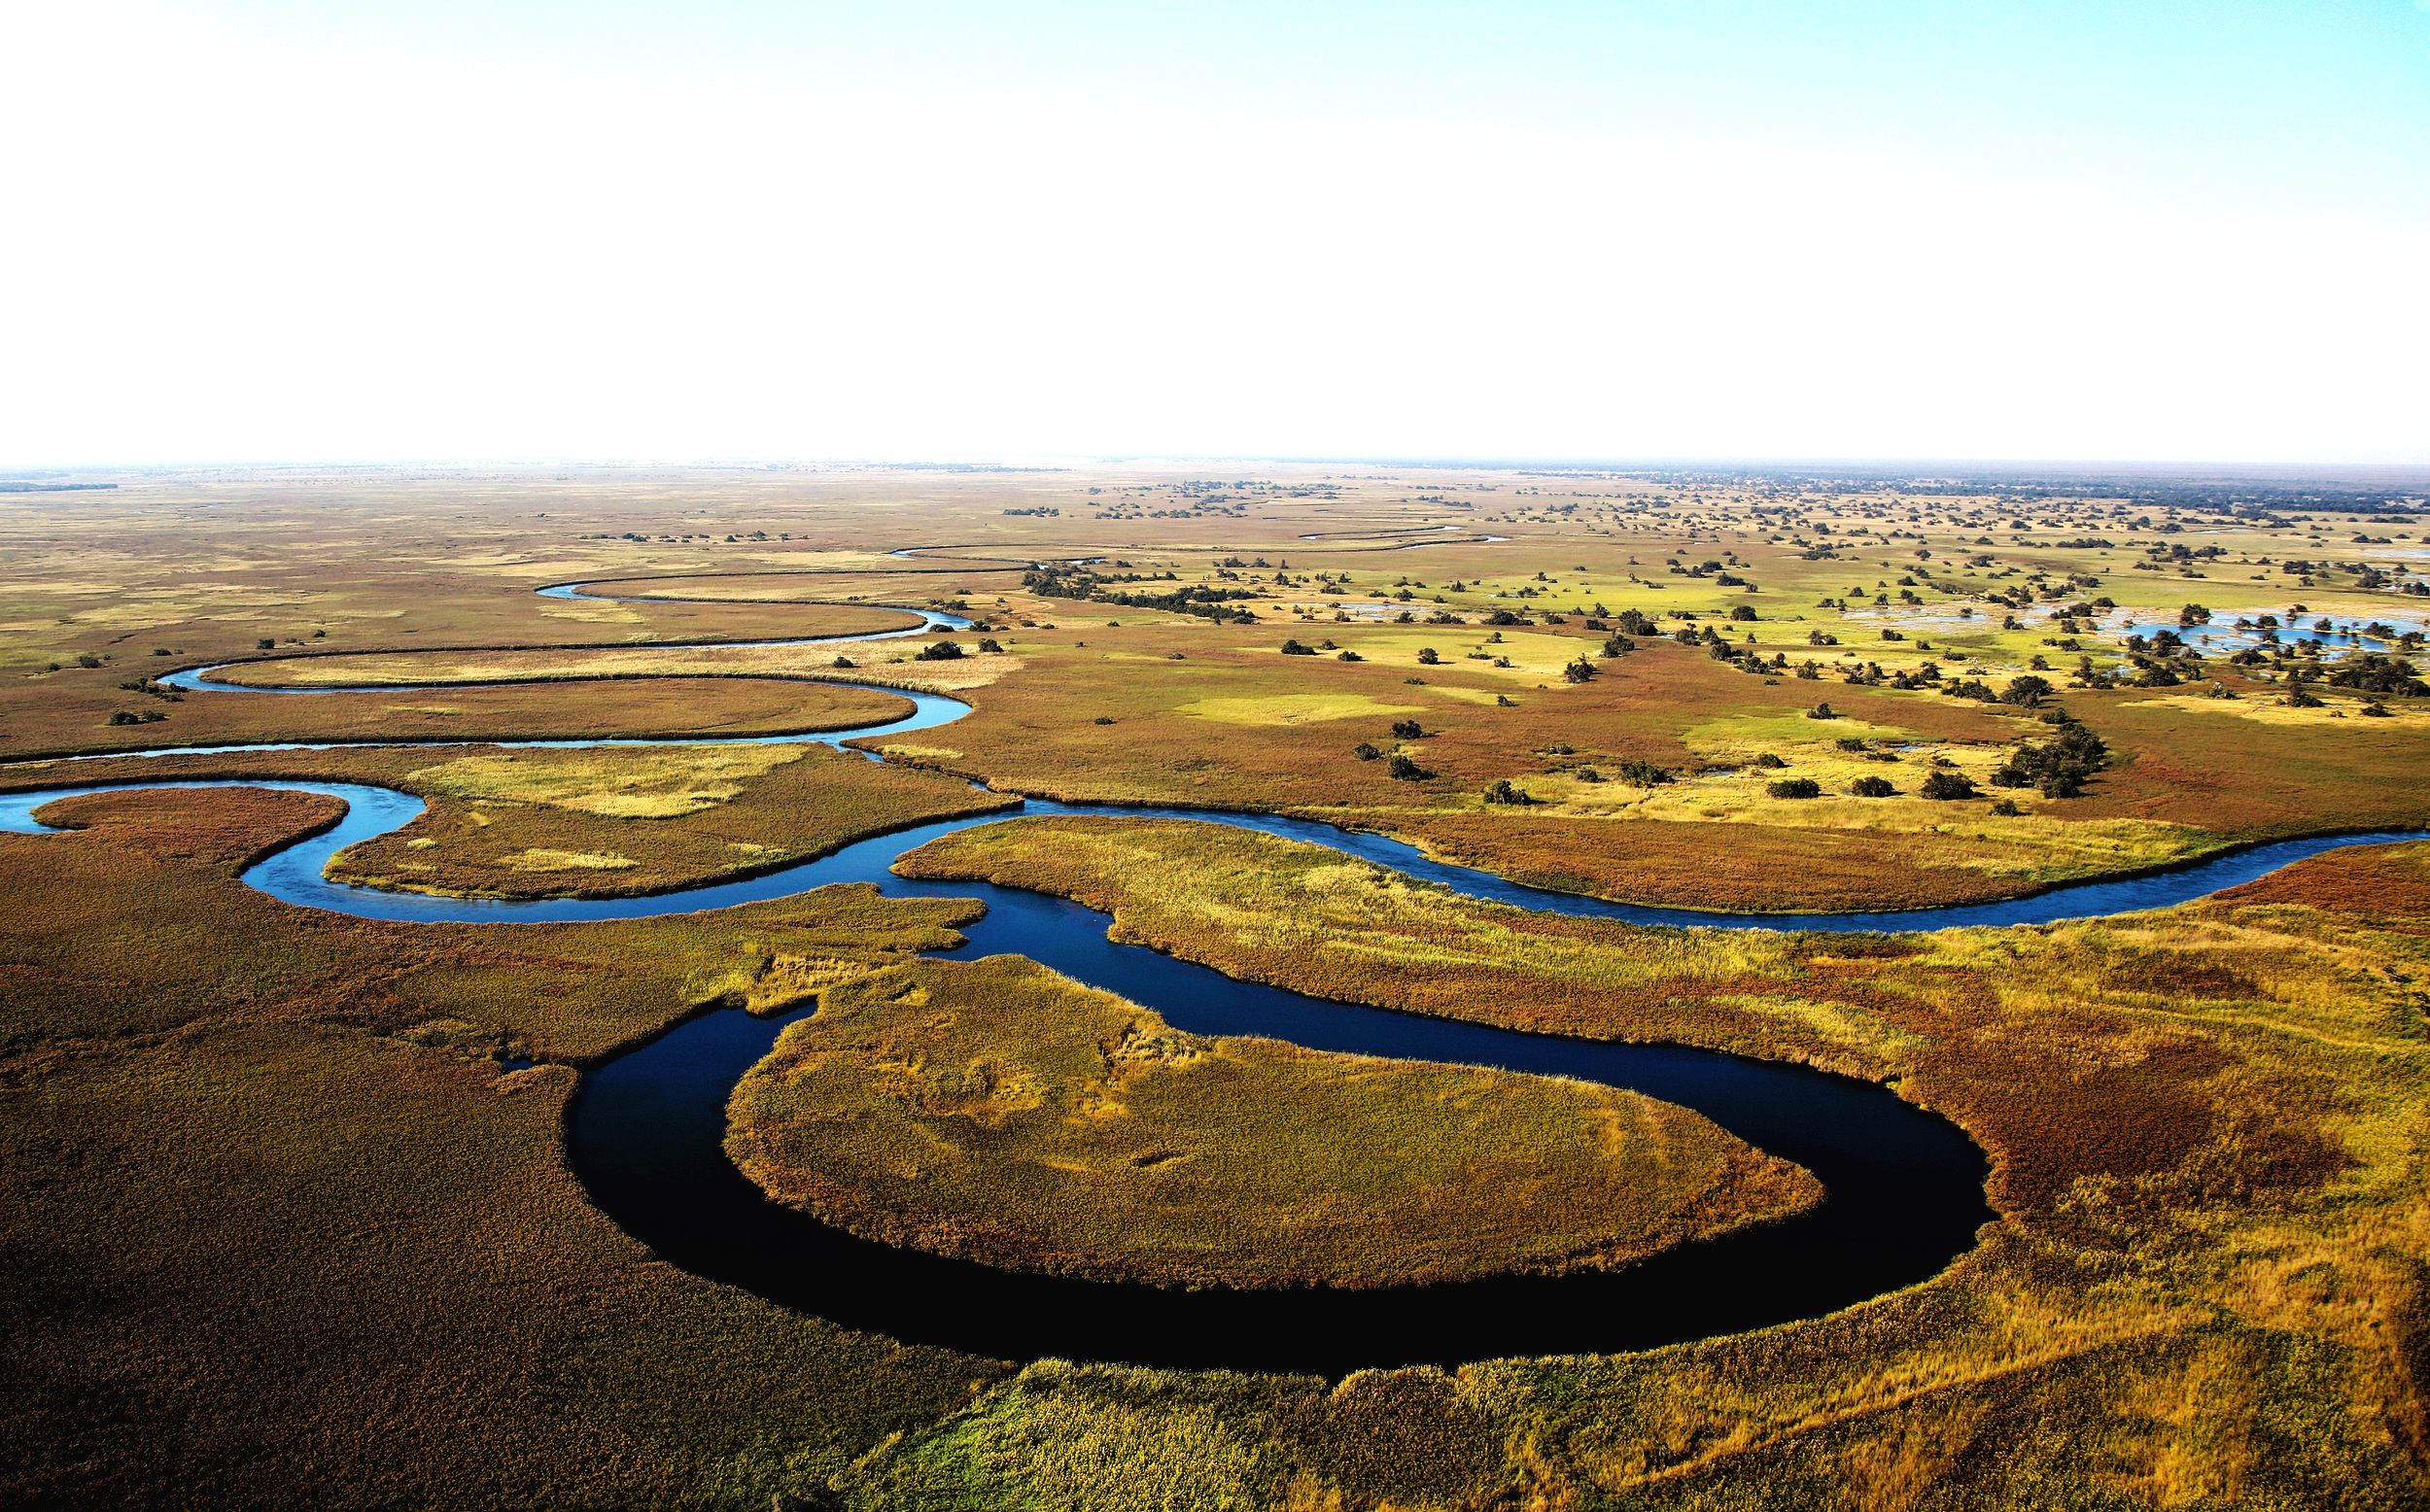 The combination of water and wildlife in the Okavango Delta